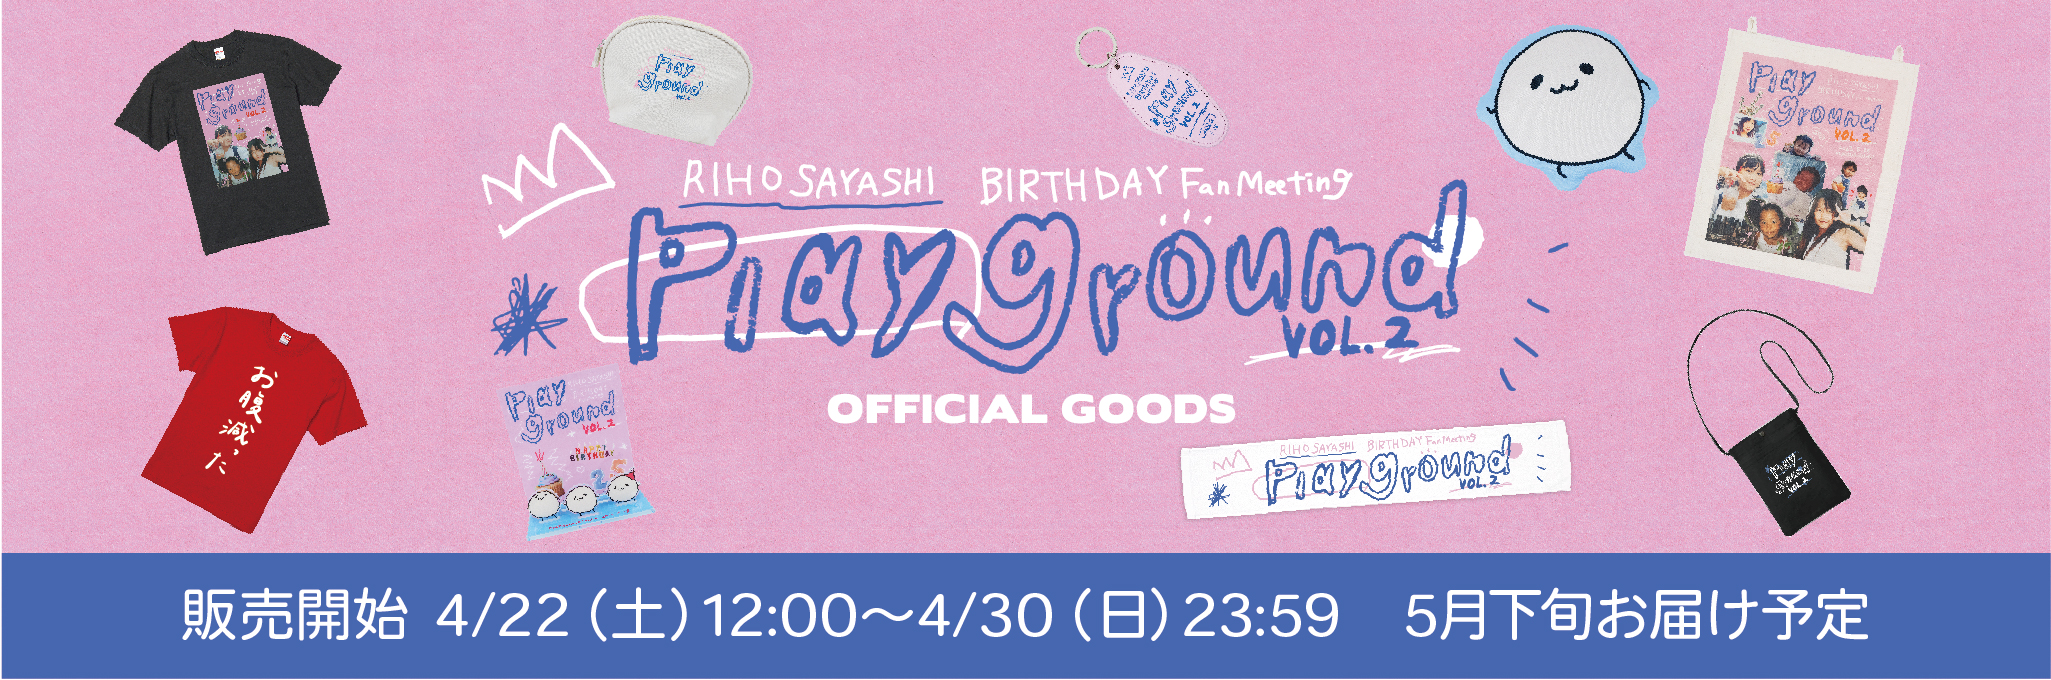 【4月22日(土)】RIHO SAYASHI BIRTHDAY Fan Meeting -PLAYGROUND!- vol.2』オフィシャルグッズの事前通販決定！